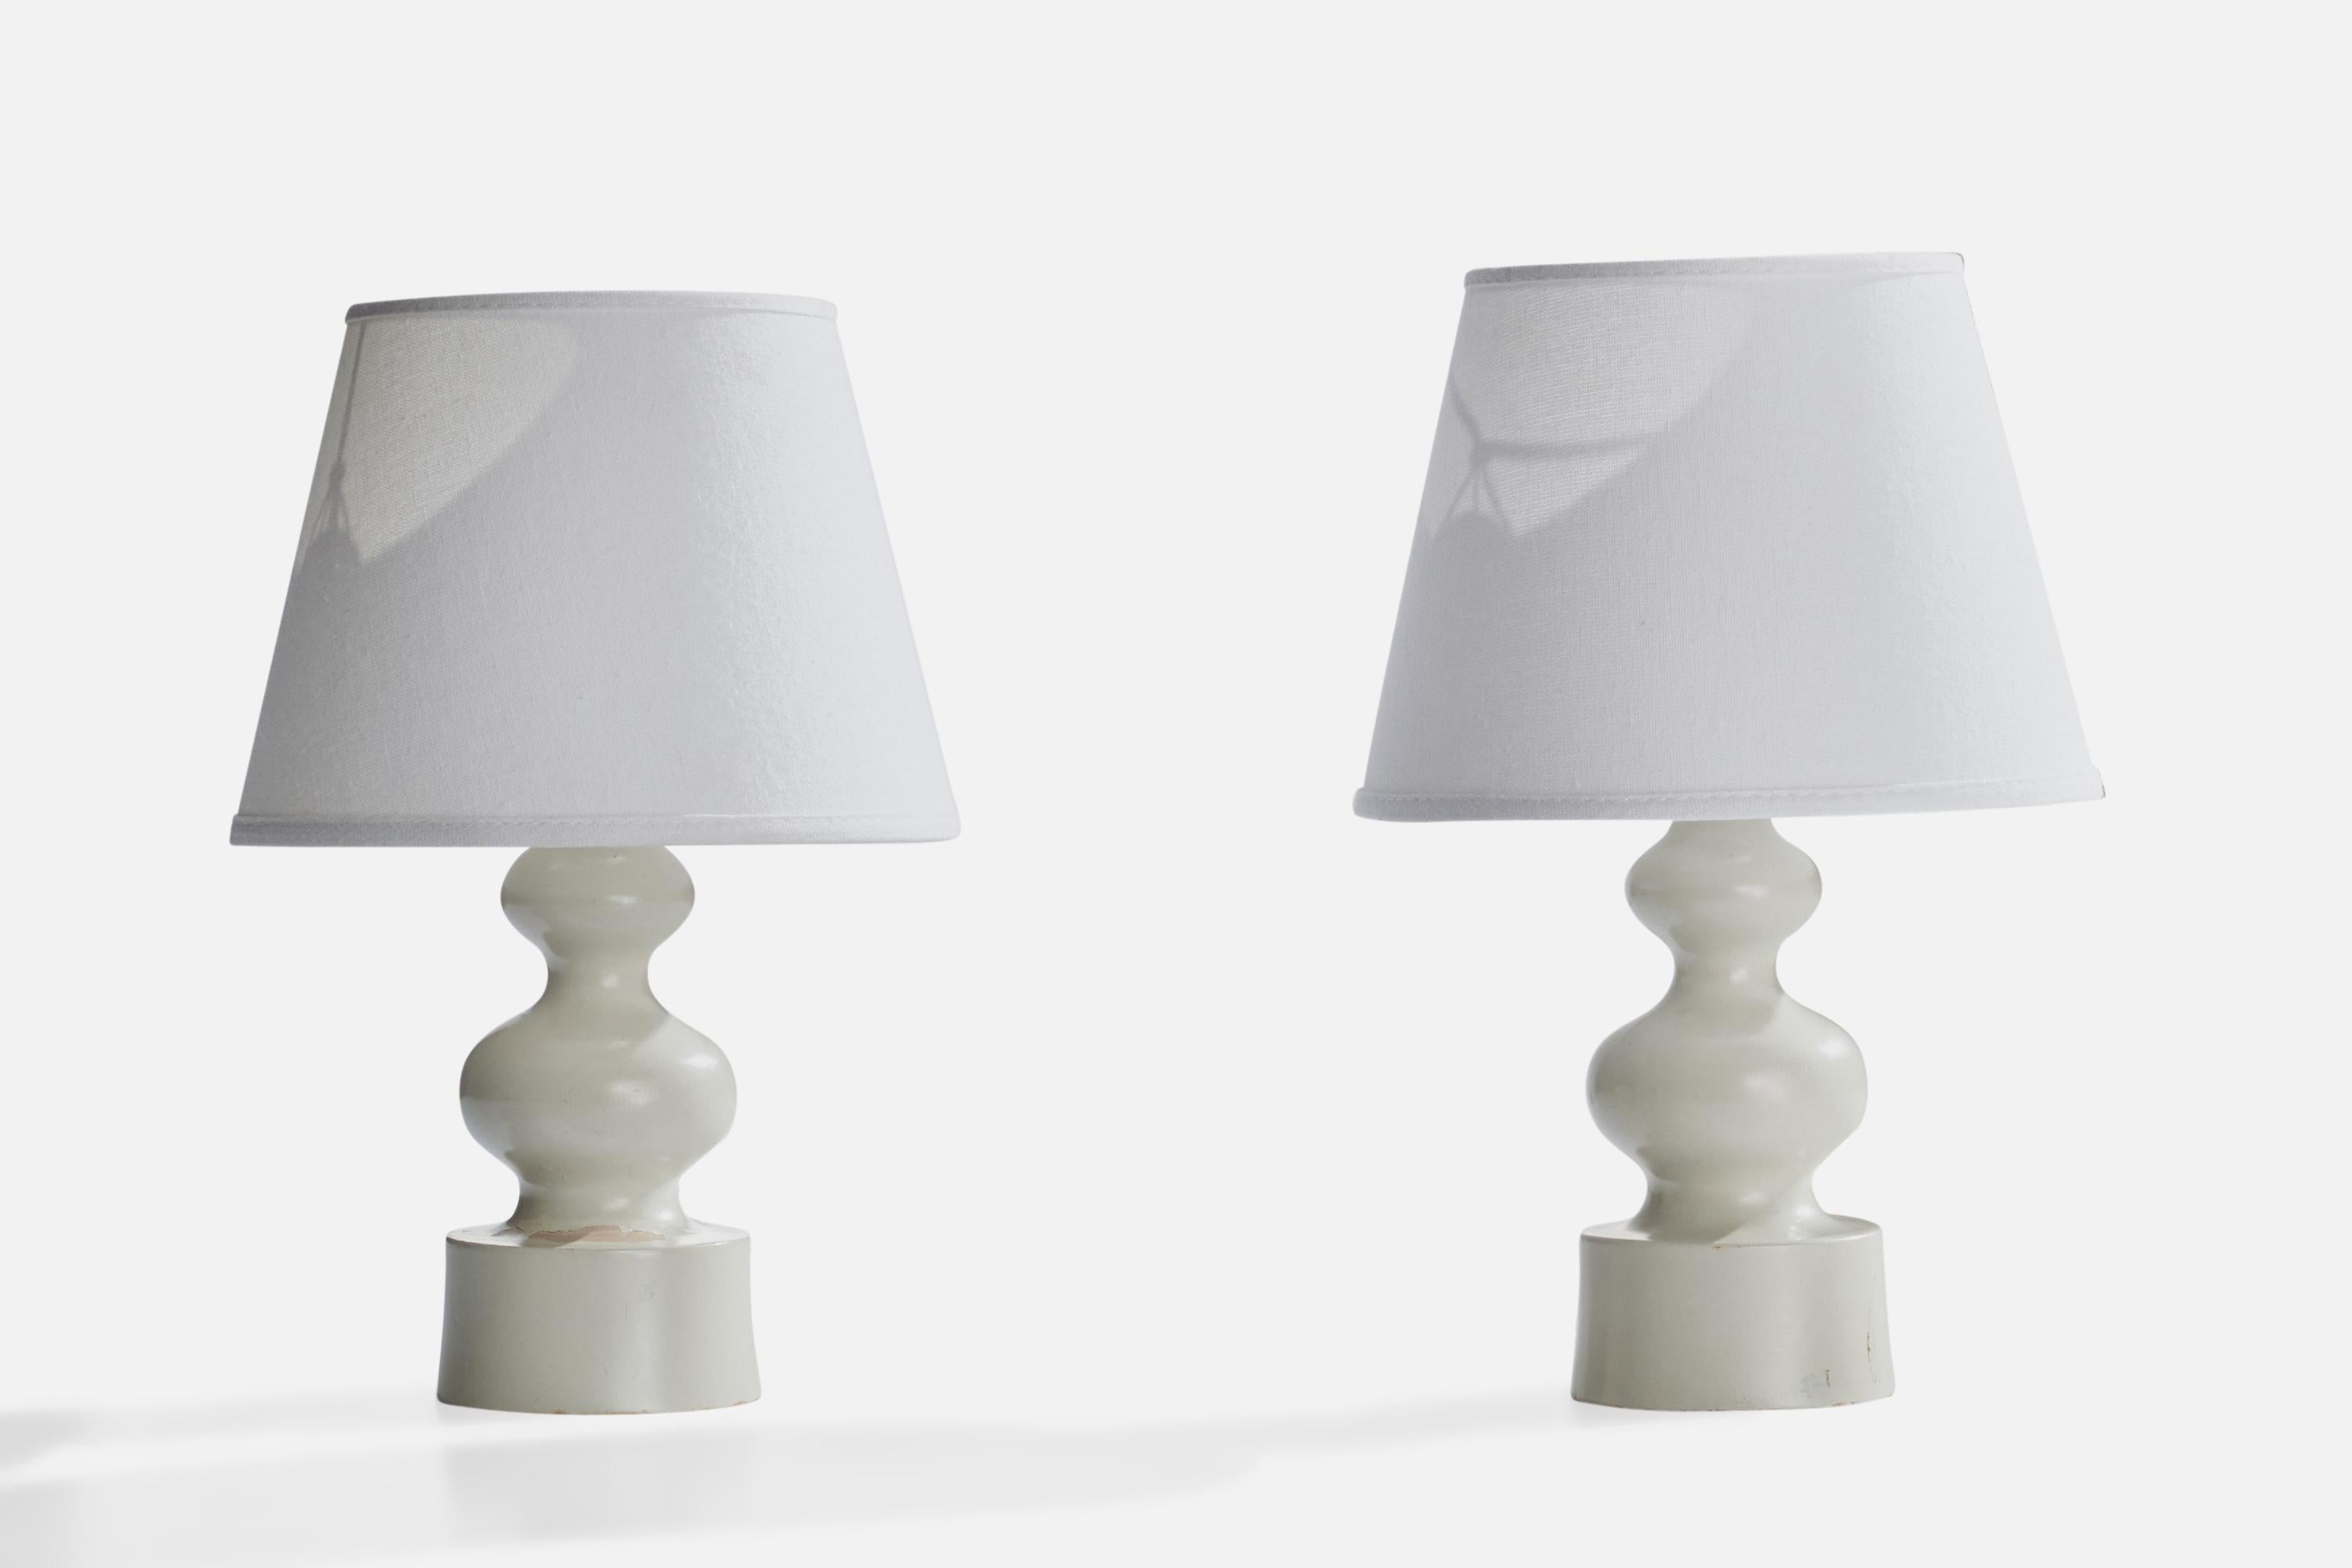 Paire de lampes de table en bois laqué blanc conçues et produites en Suède, c.C. 1970.

Dimensions de la lampe (pouces) : 9